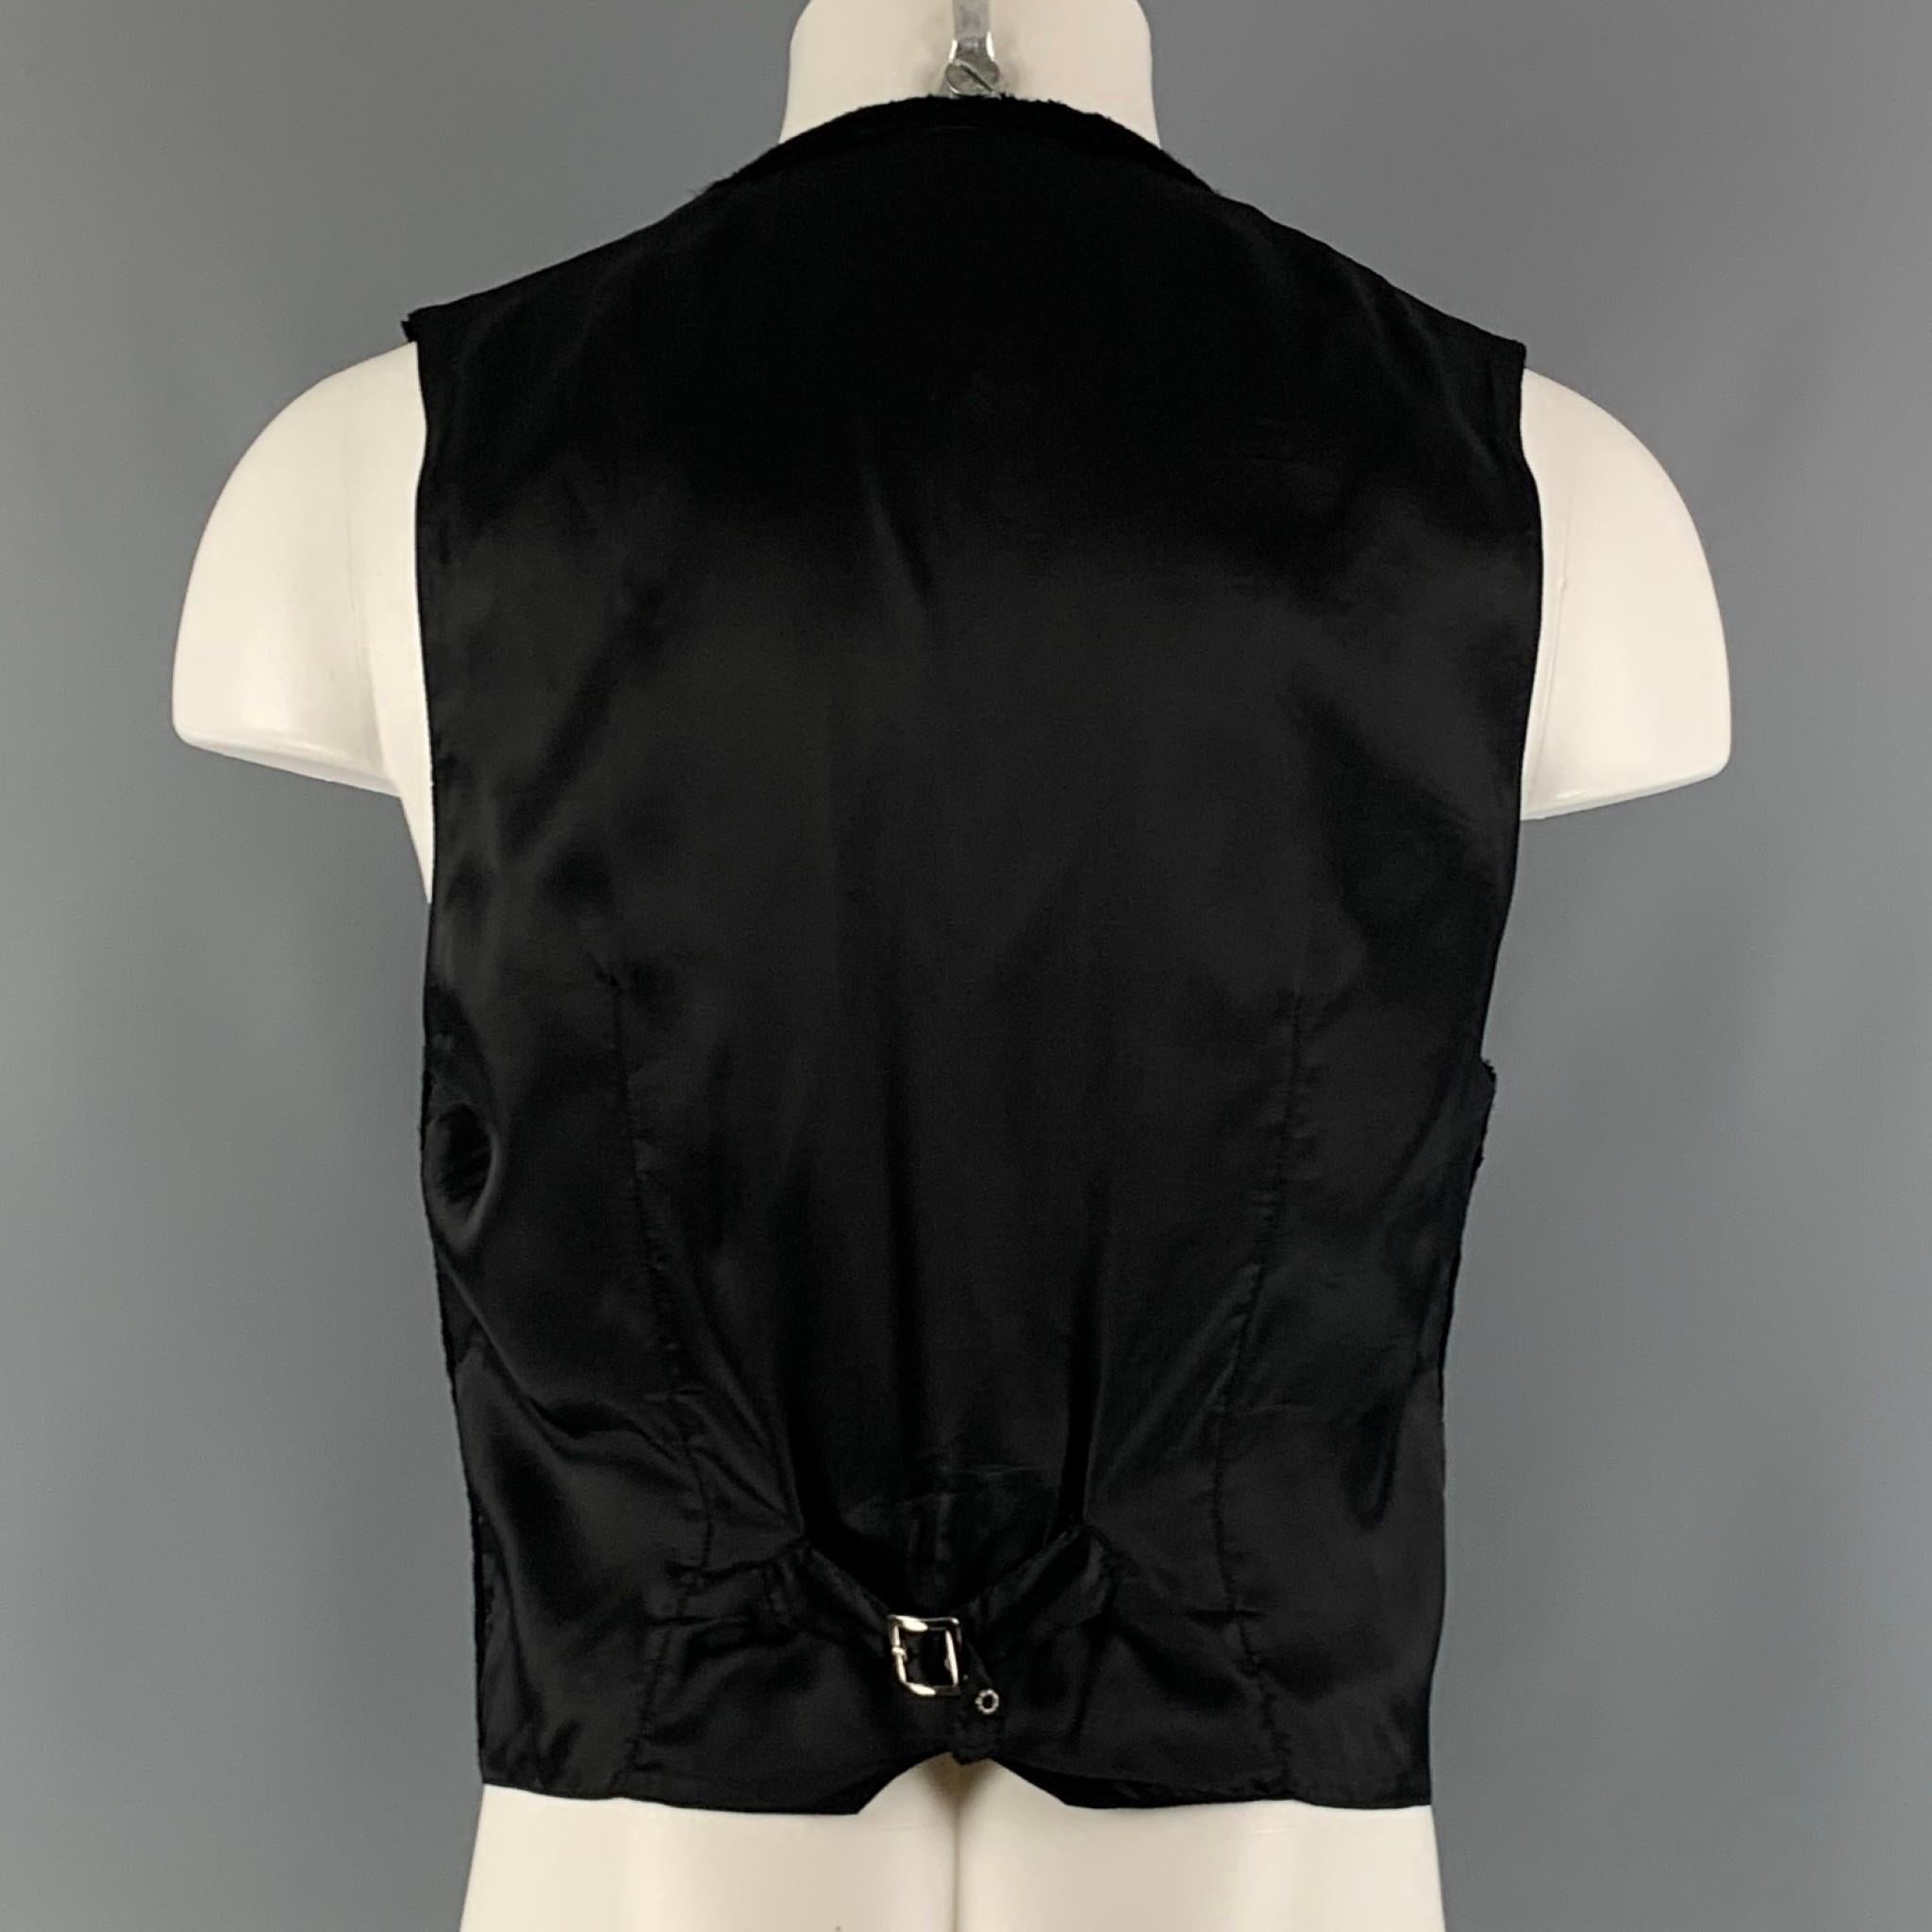 Men's VERSUS by GIANNI VERSACE Size 40 Black Cotton Viscose Vest